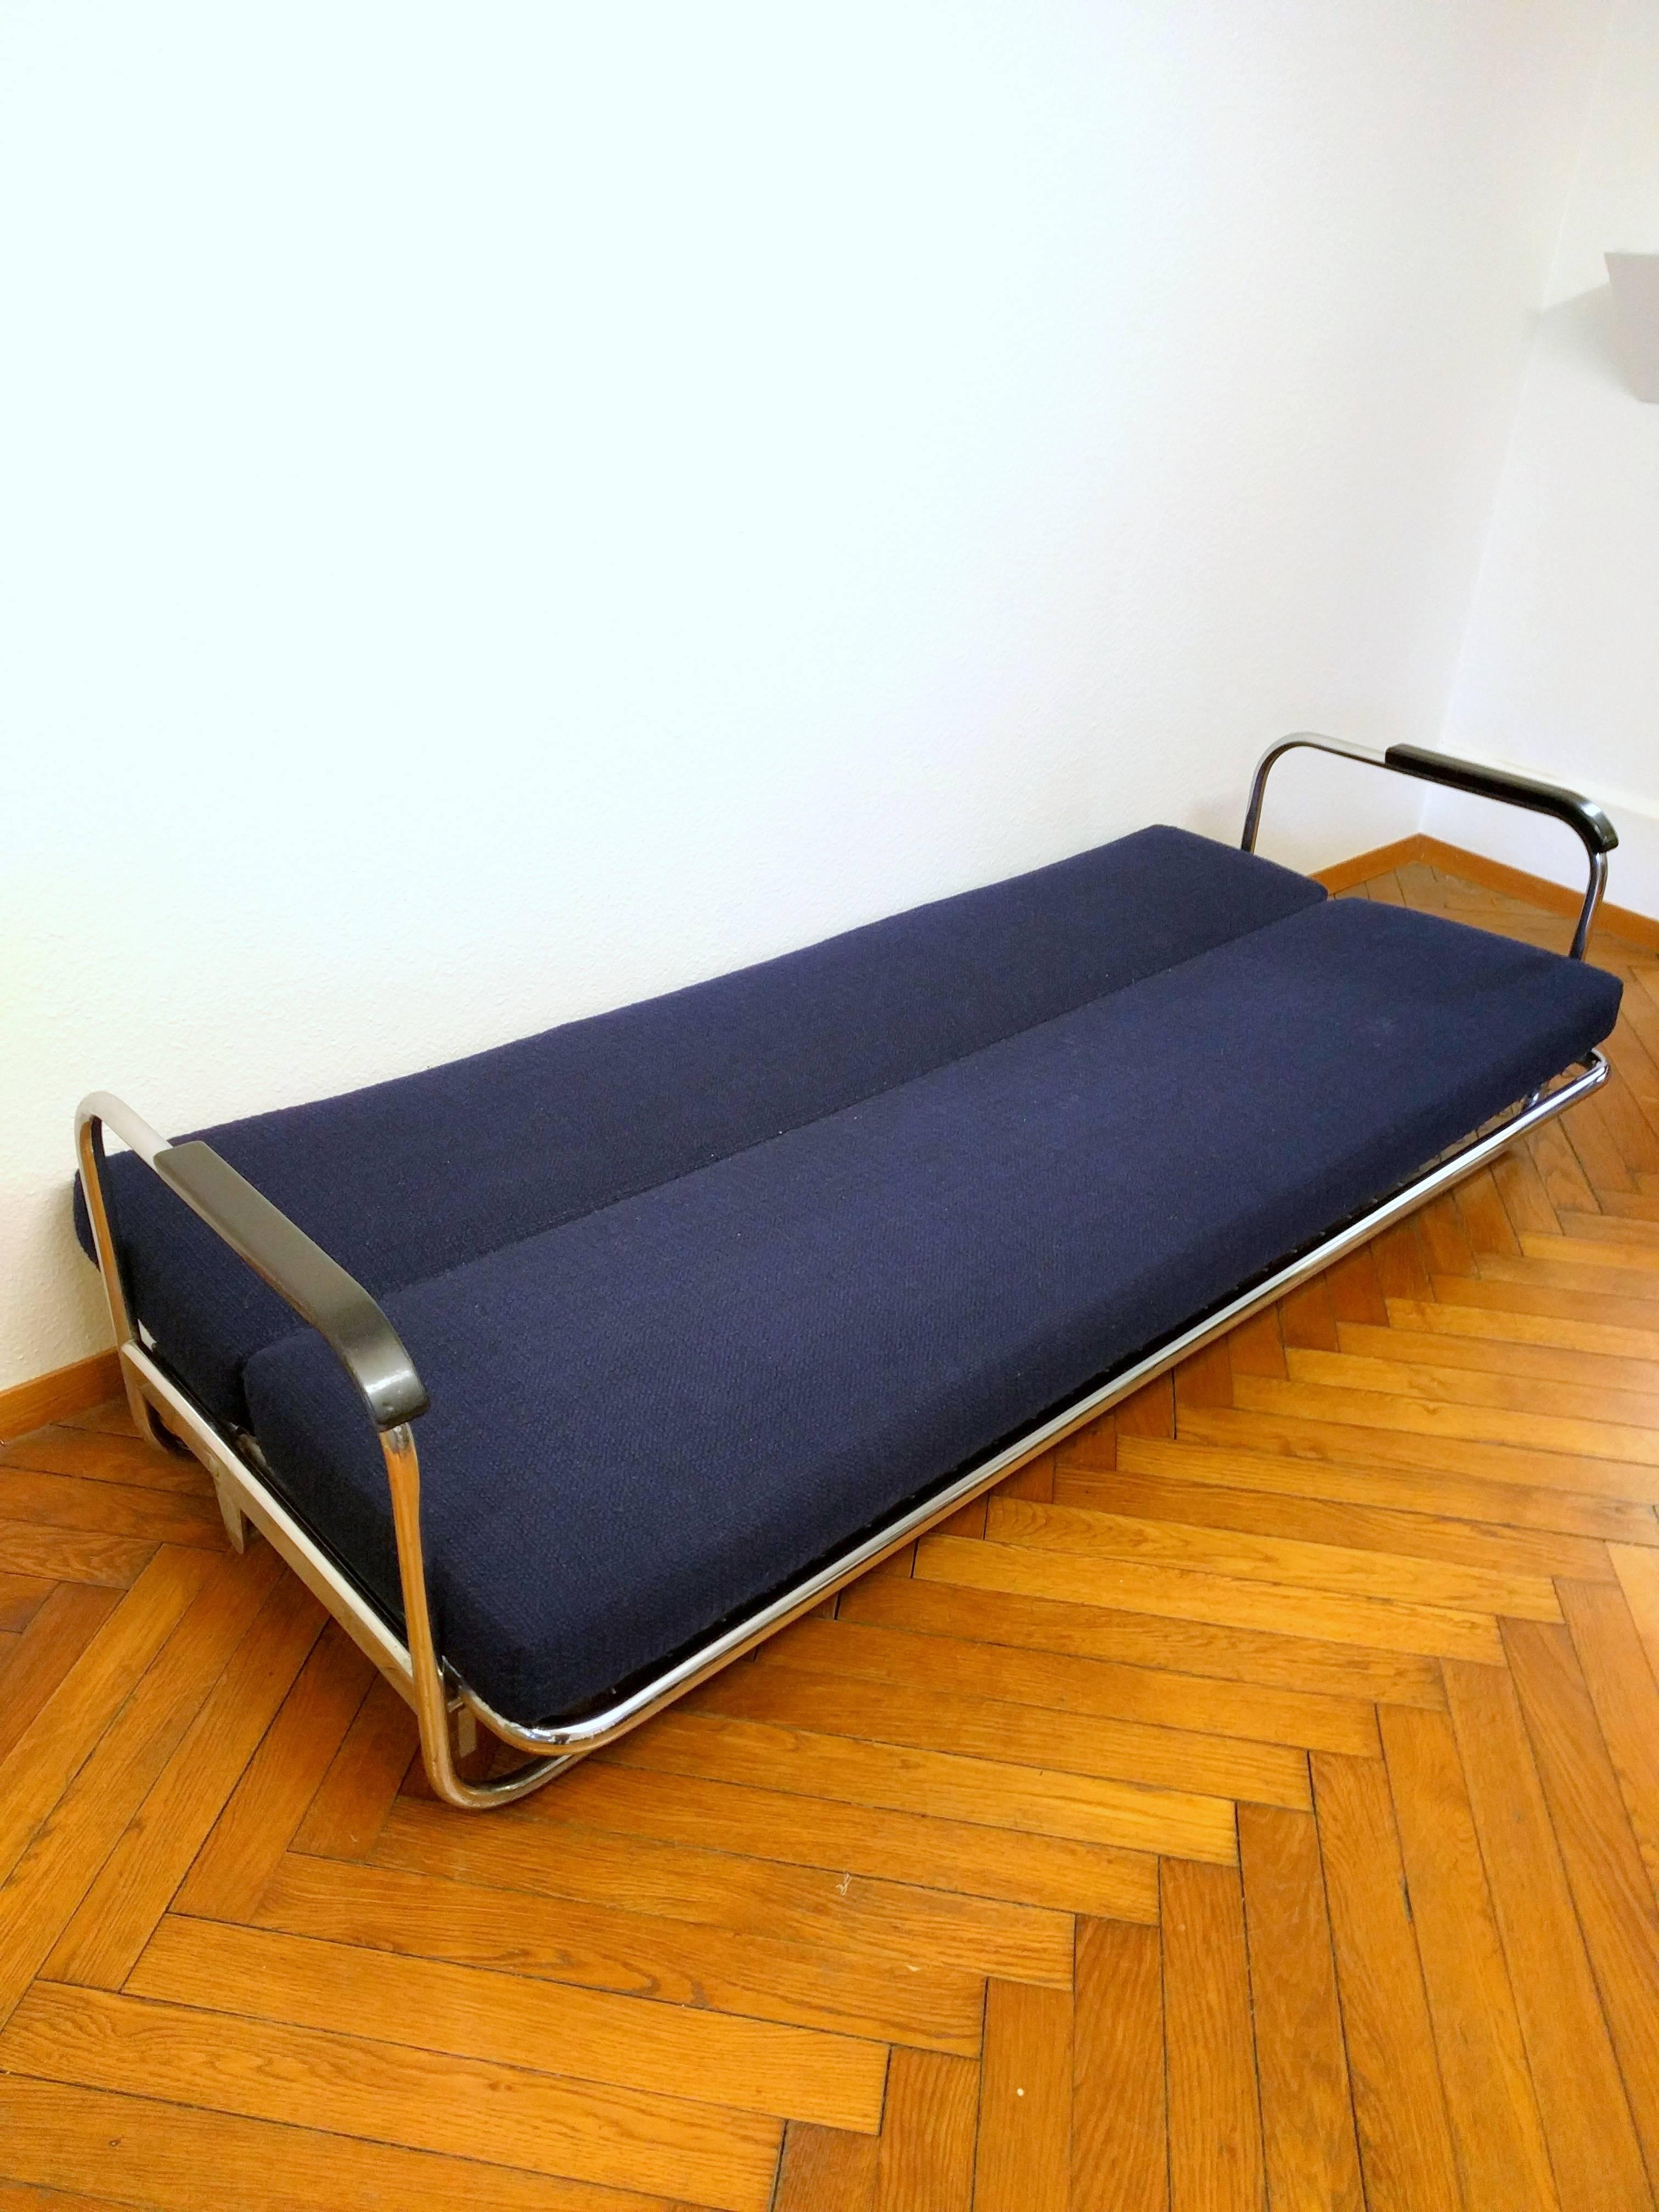 Scandinavian Modern Alvar Aalto Sofa Bed